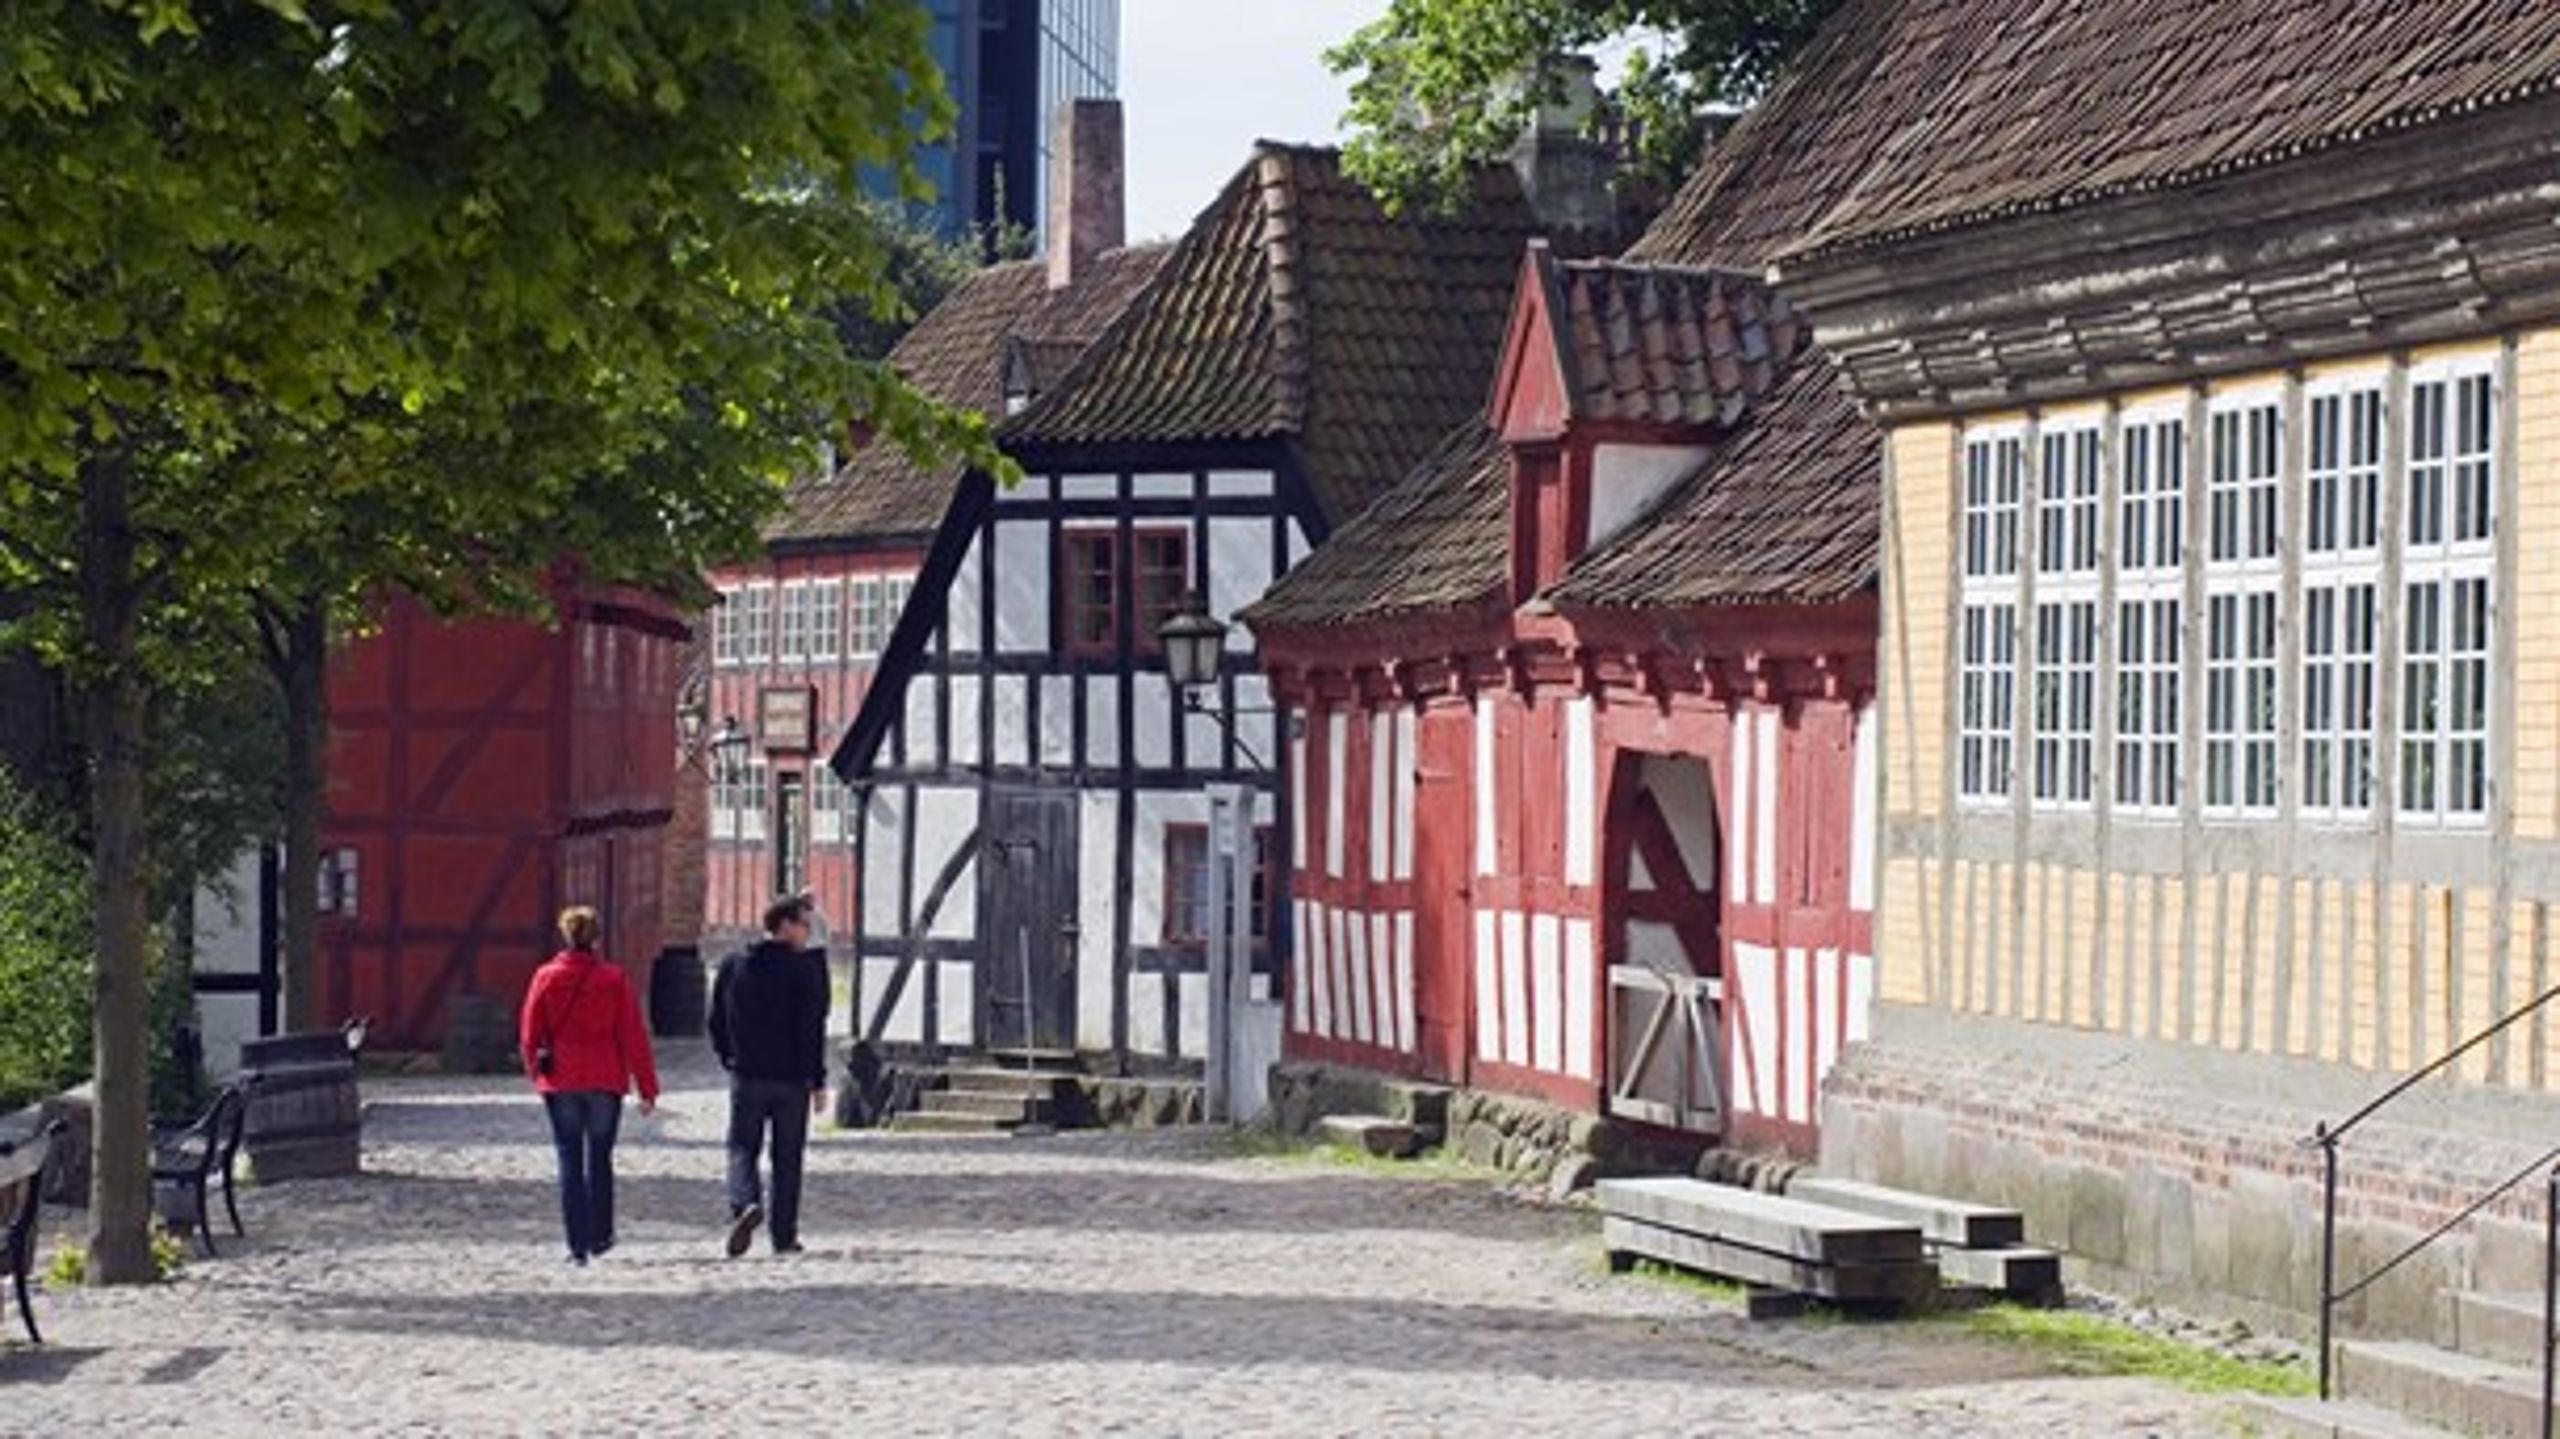 Den Gamle By er et af de store danske museer, hvis gæster kommer tættest på at afspejle befolkningens sammensætning.